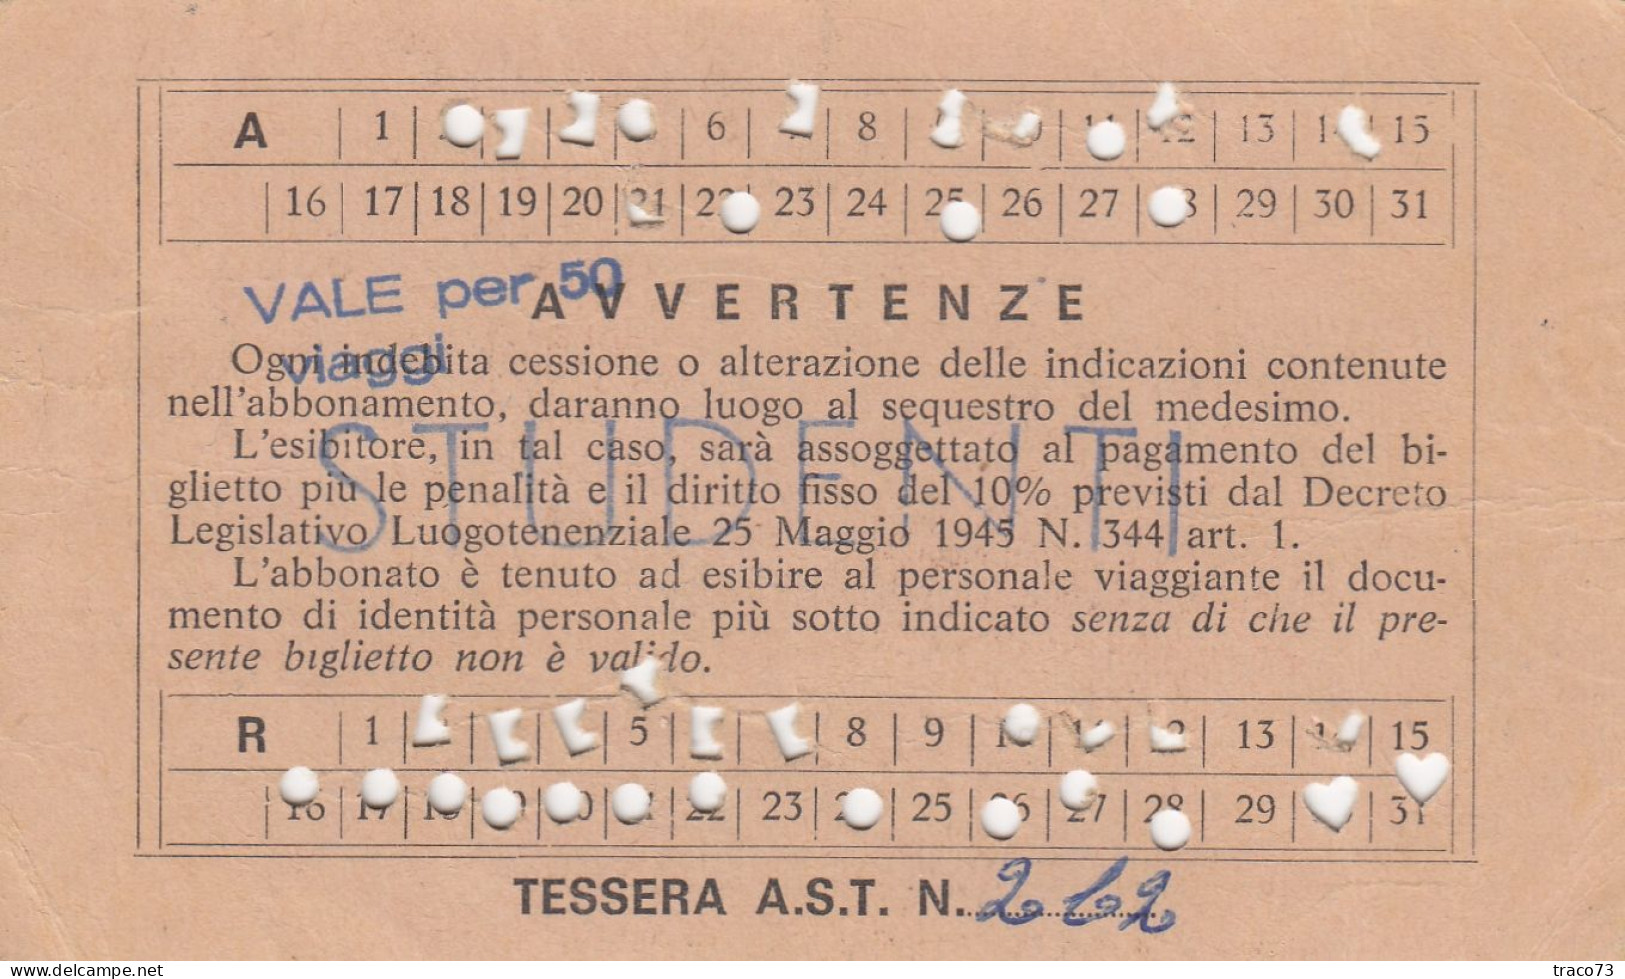 AZIENDA SICILIANA TRASPORTI / Autolinee Della Sicilia - Abbonamento Speciale _S. Flavia-Bagheria E Viceversa_ Ott. 1979 - Europe